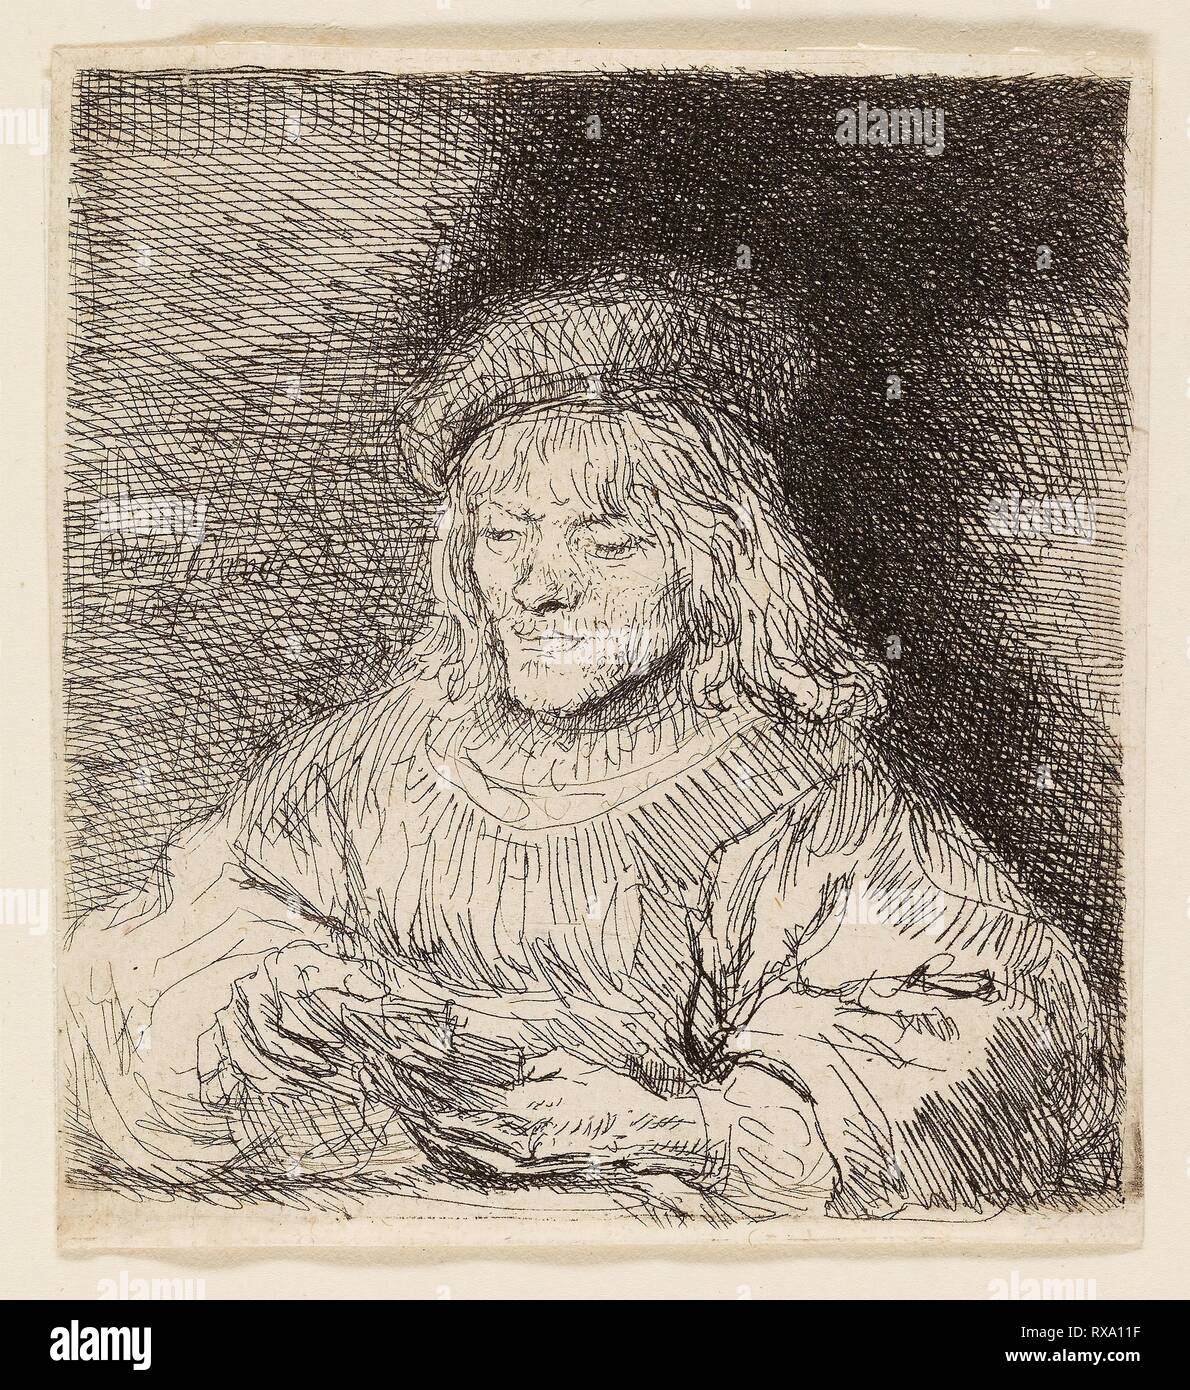 Le lecteur de carte. Rembrandt van Rijn, néerlandais, 1606-1669. Date :  1641. Dimensions : 87 x 80 mm (image/plaque) ; 91 x 83 mm (feuille).  Gravure sur papier. Origine : Pays-Bas. Musée : le Chicago Art Institute  Photo Stock - Alamy